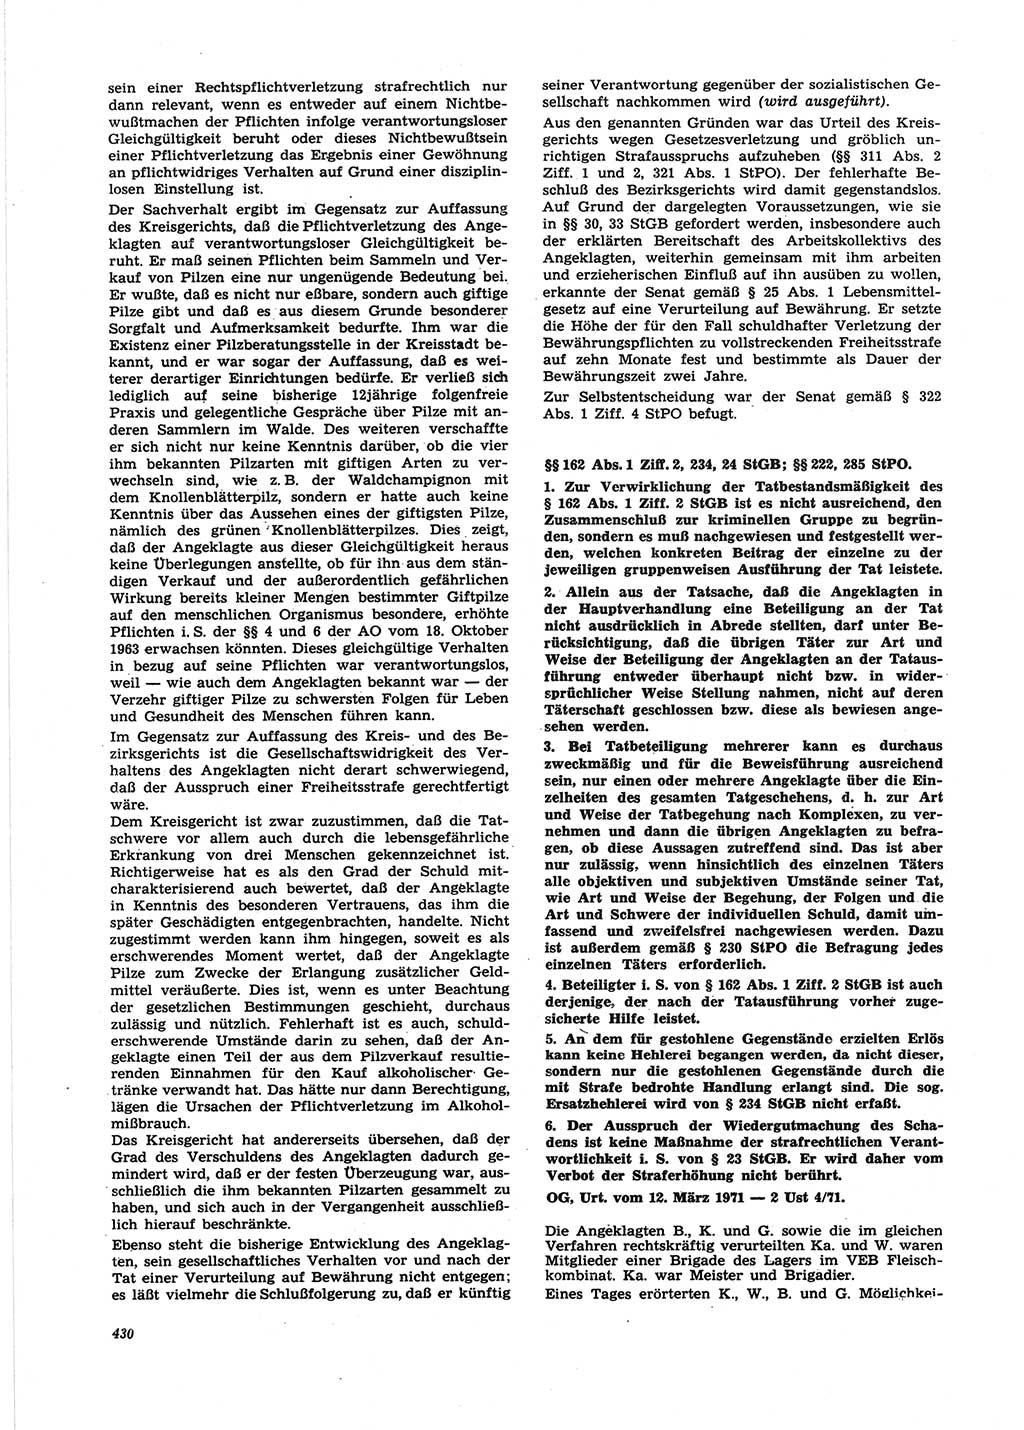 Neue Justiz (NJ), Zeitschrift für Recht und Rechtswissenschaft [Deutsche Demokratische Republik (DDR)], 25. Jahrgang 1971, Seite 430 (NJ DDR 1971, S. 430)